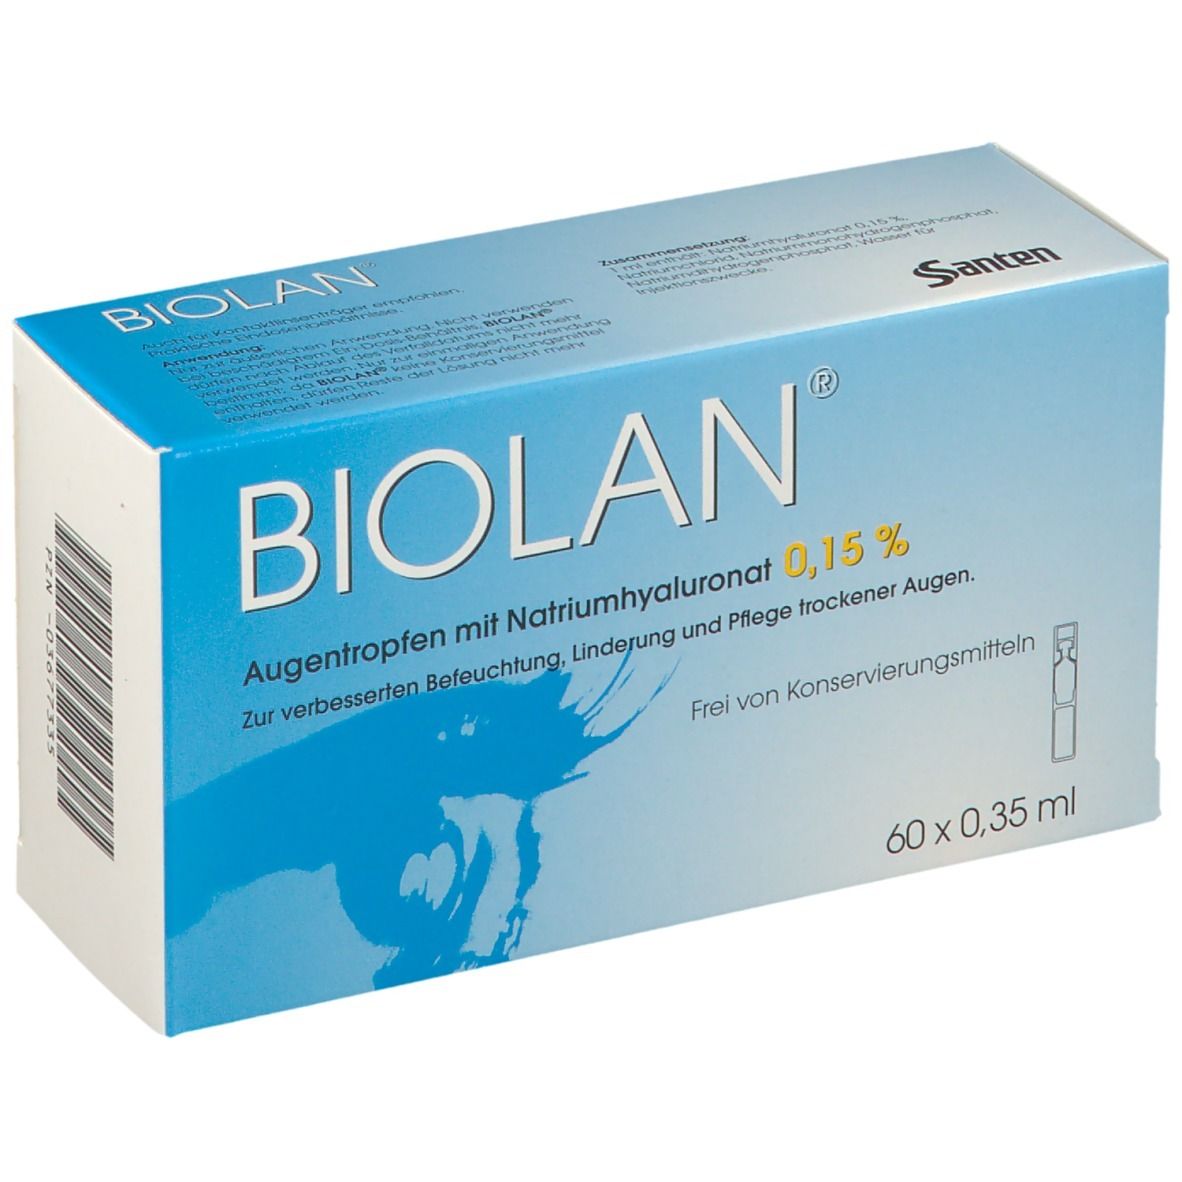 Image of BIOLAN® Augentropfen